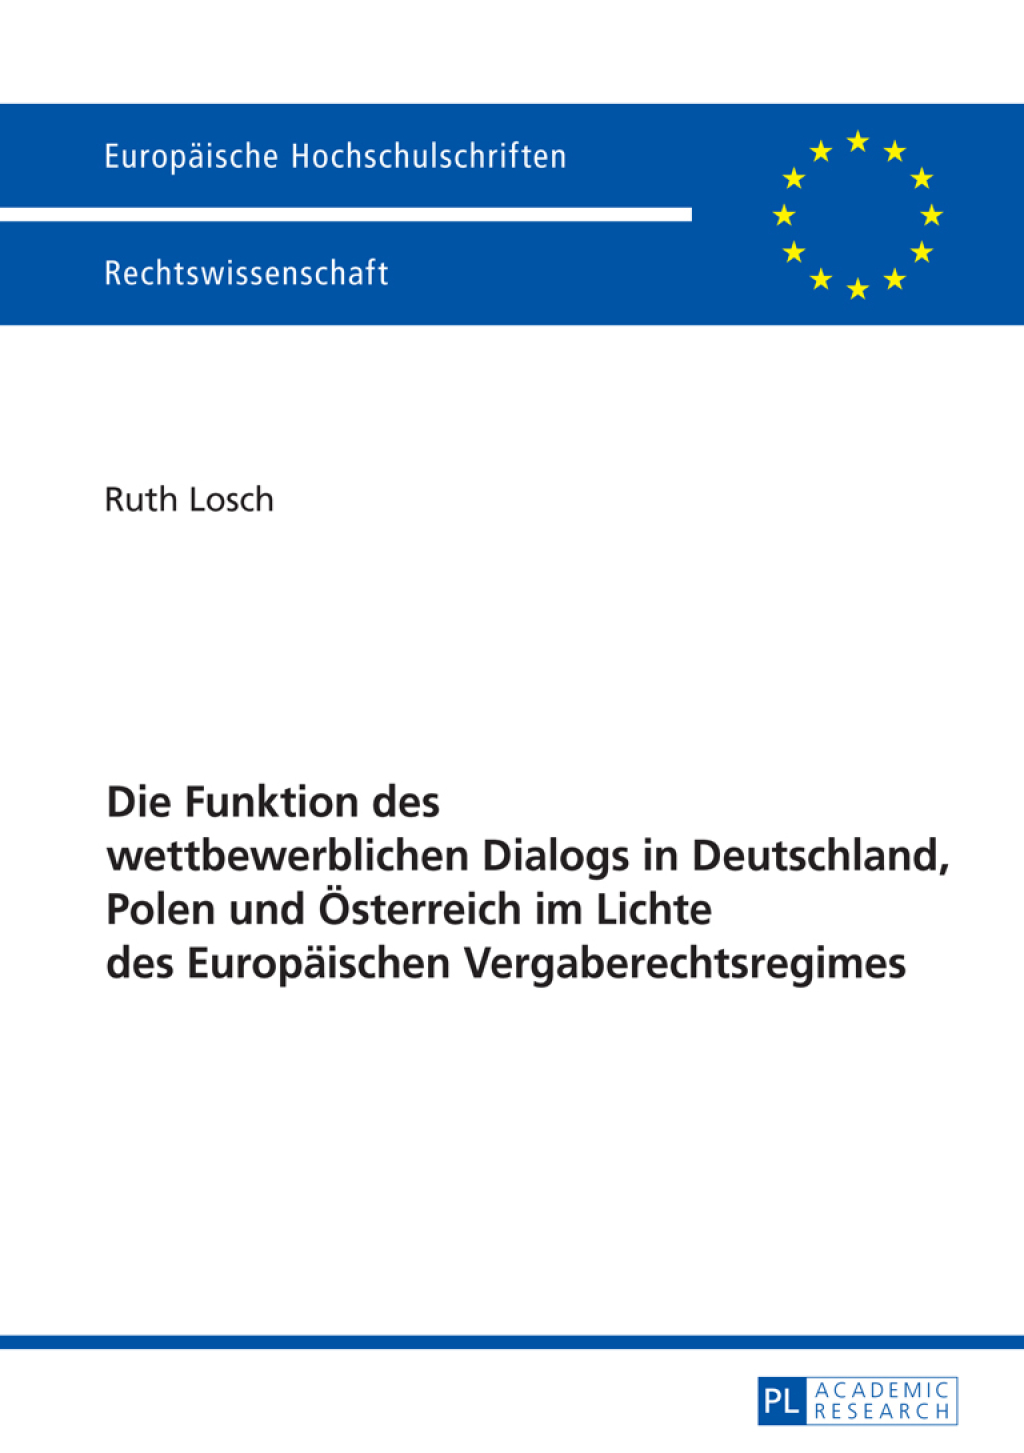 Die Funktion des wettbewerblichen Dialogs in Deutschland  Polen und Oesterreich im Lichte des Europaeischen Vergaberechts - 1st Edition (eBook)